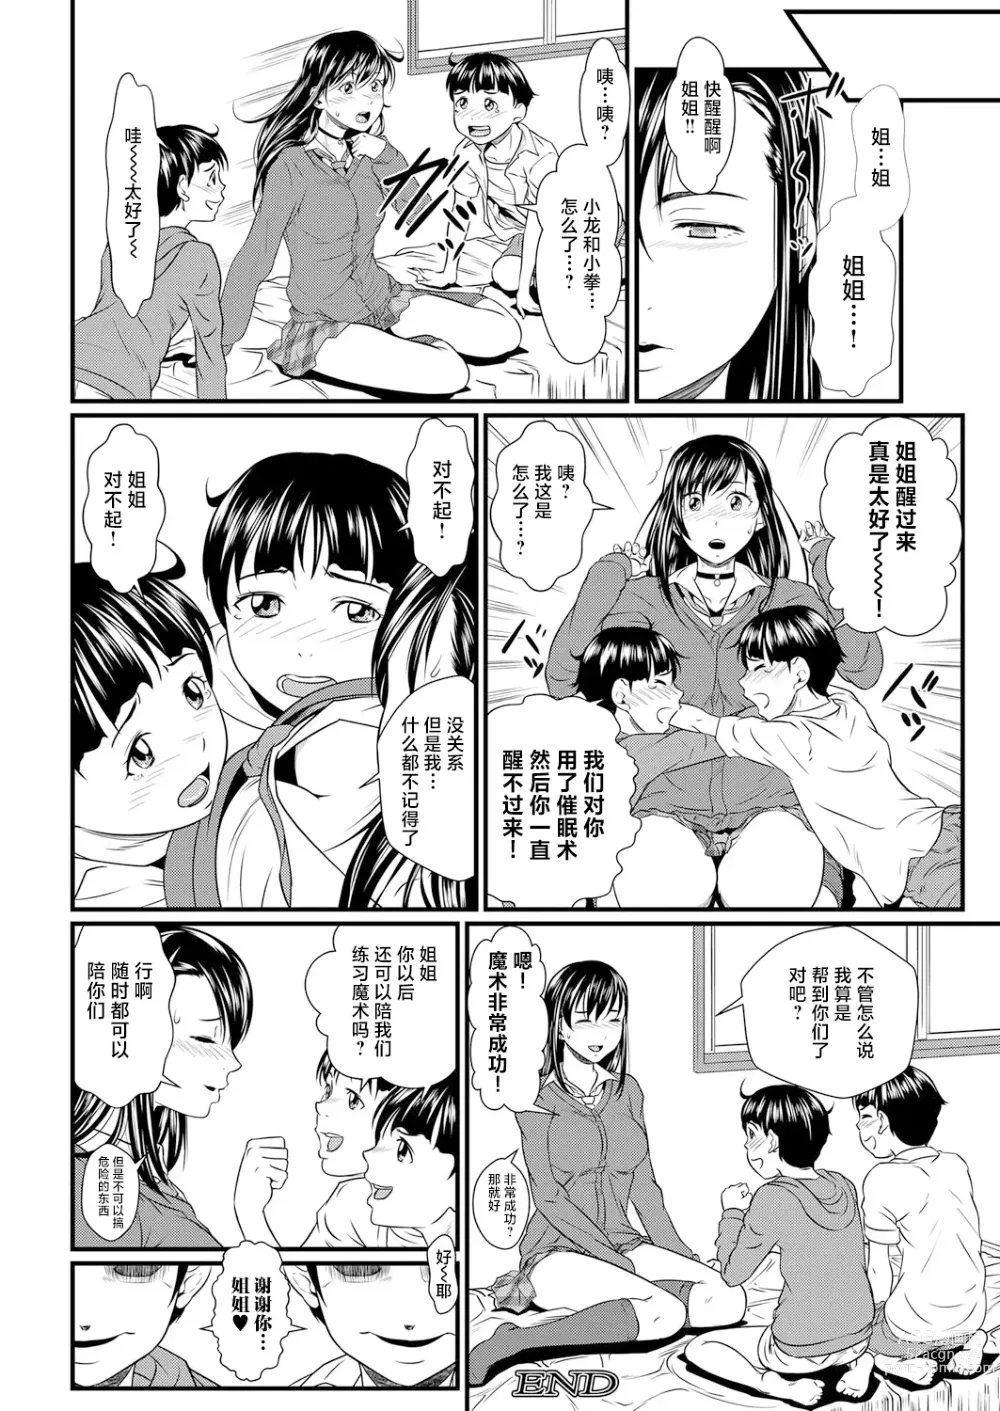 Page 37 of manga Miracle Illusion